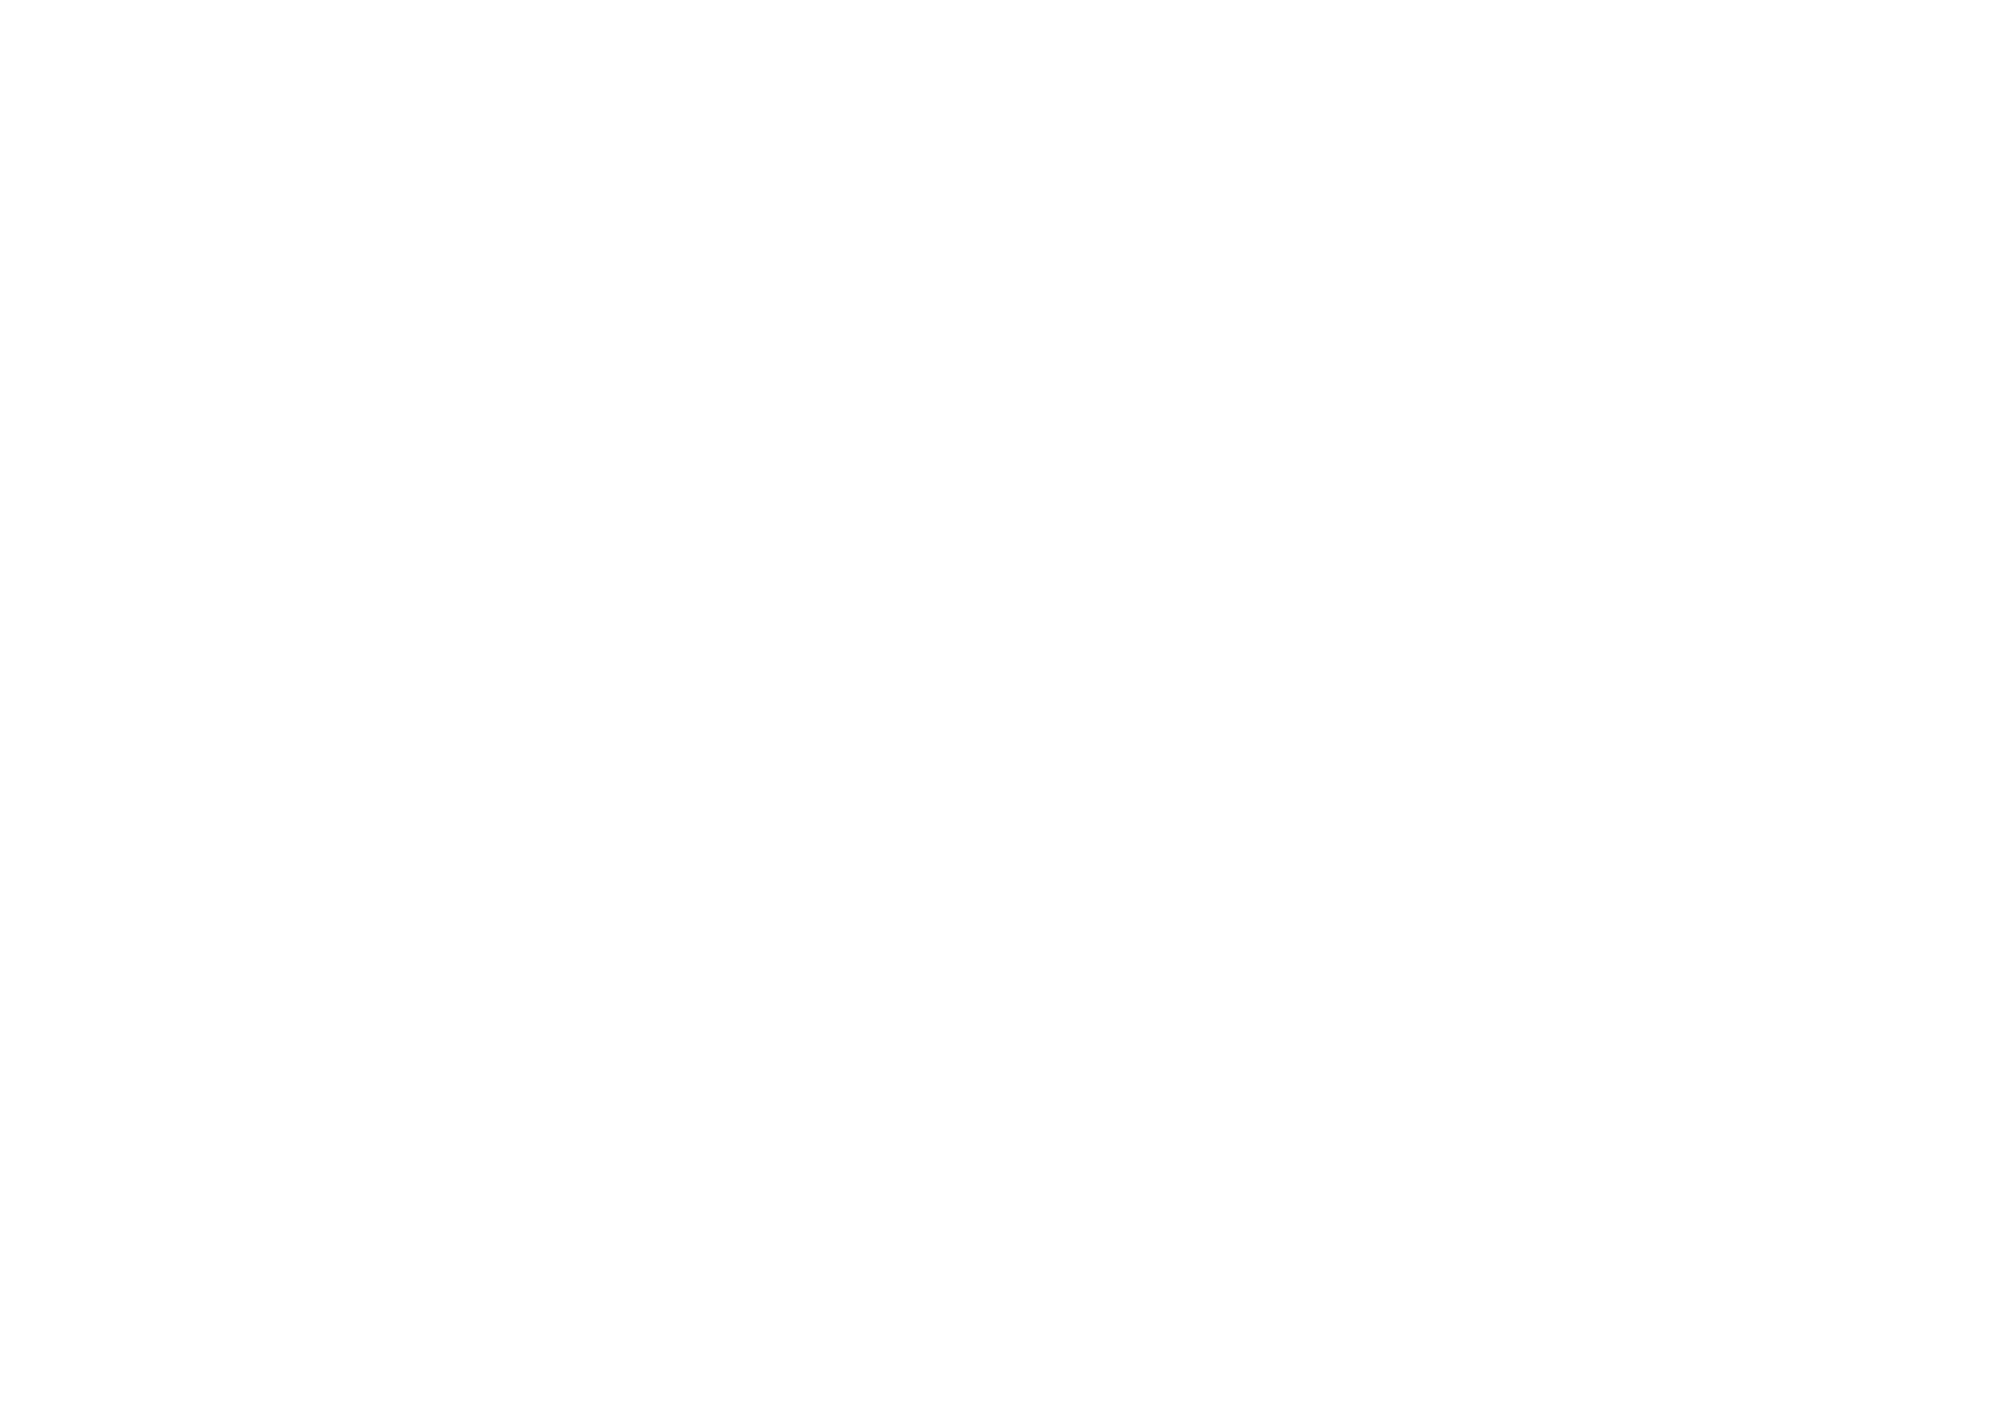 SHIKON kyoto